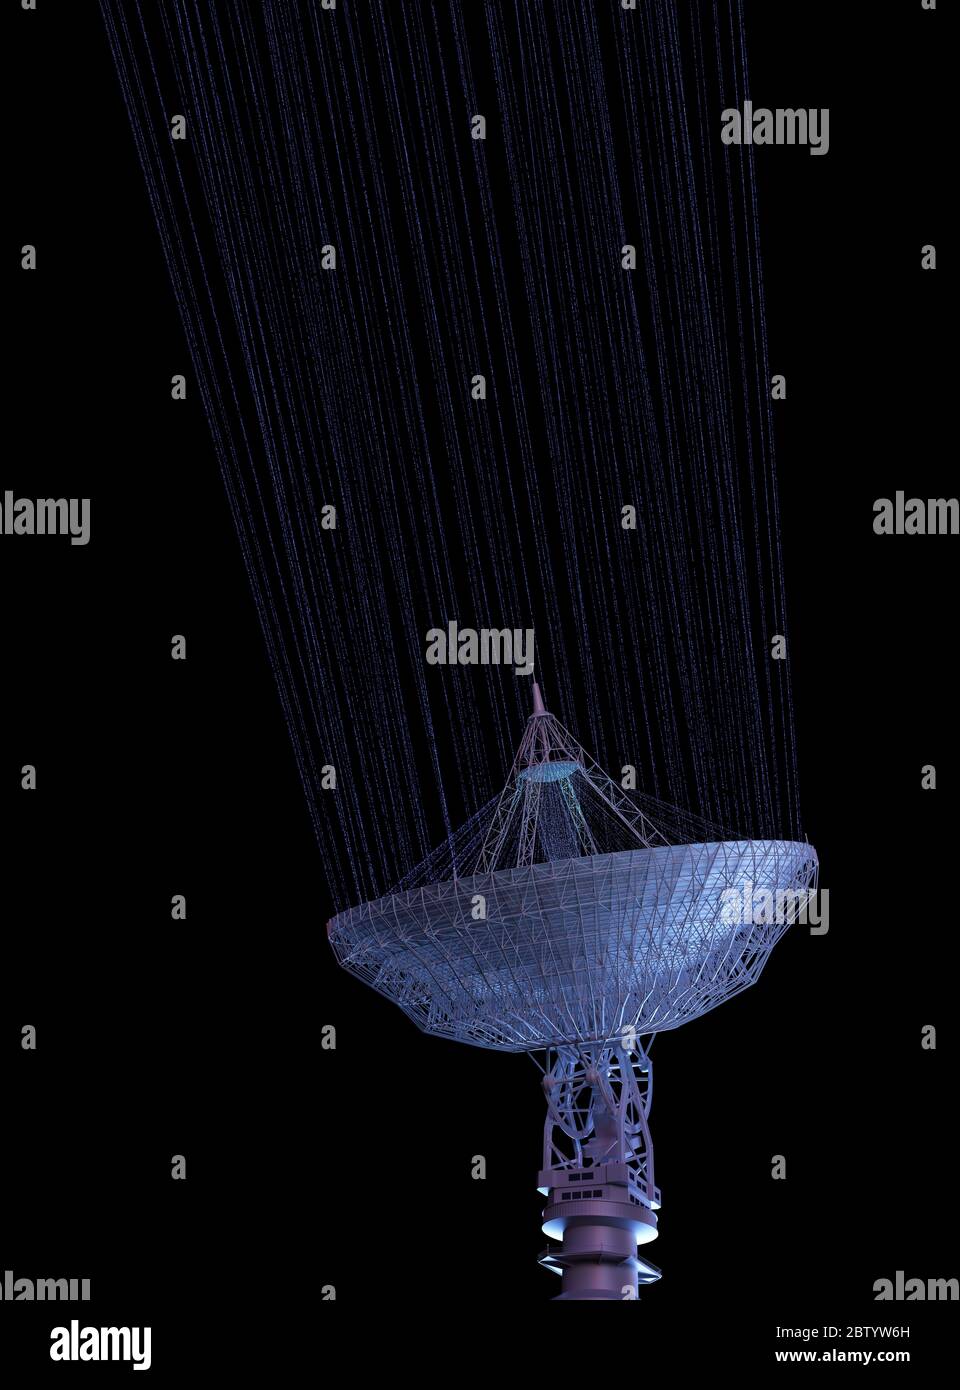 Antenne satellite énorme pour la communication et la réception de signal hors de la planète Terre. Illustration 3D avec masque inclus. Banque D'Images